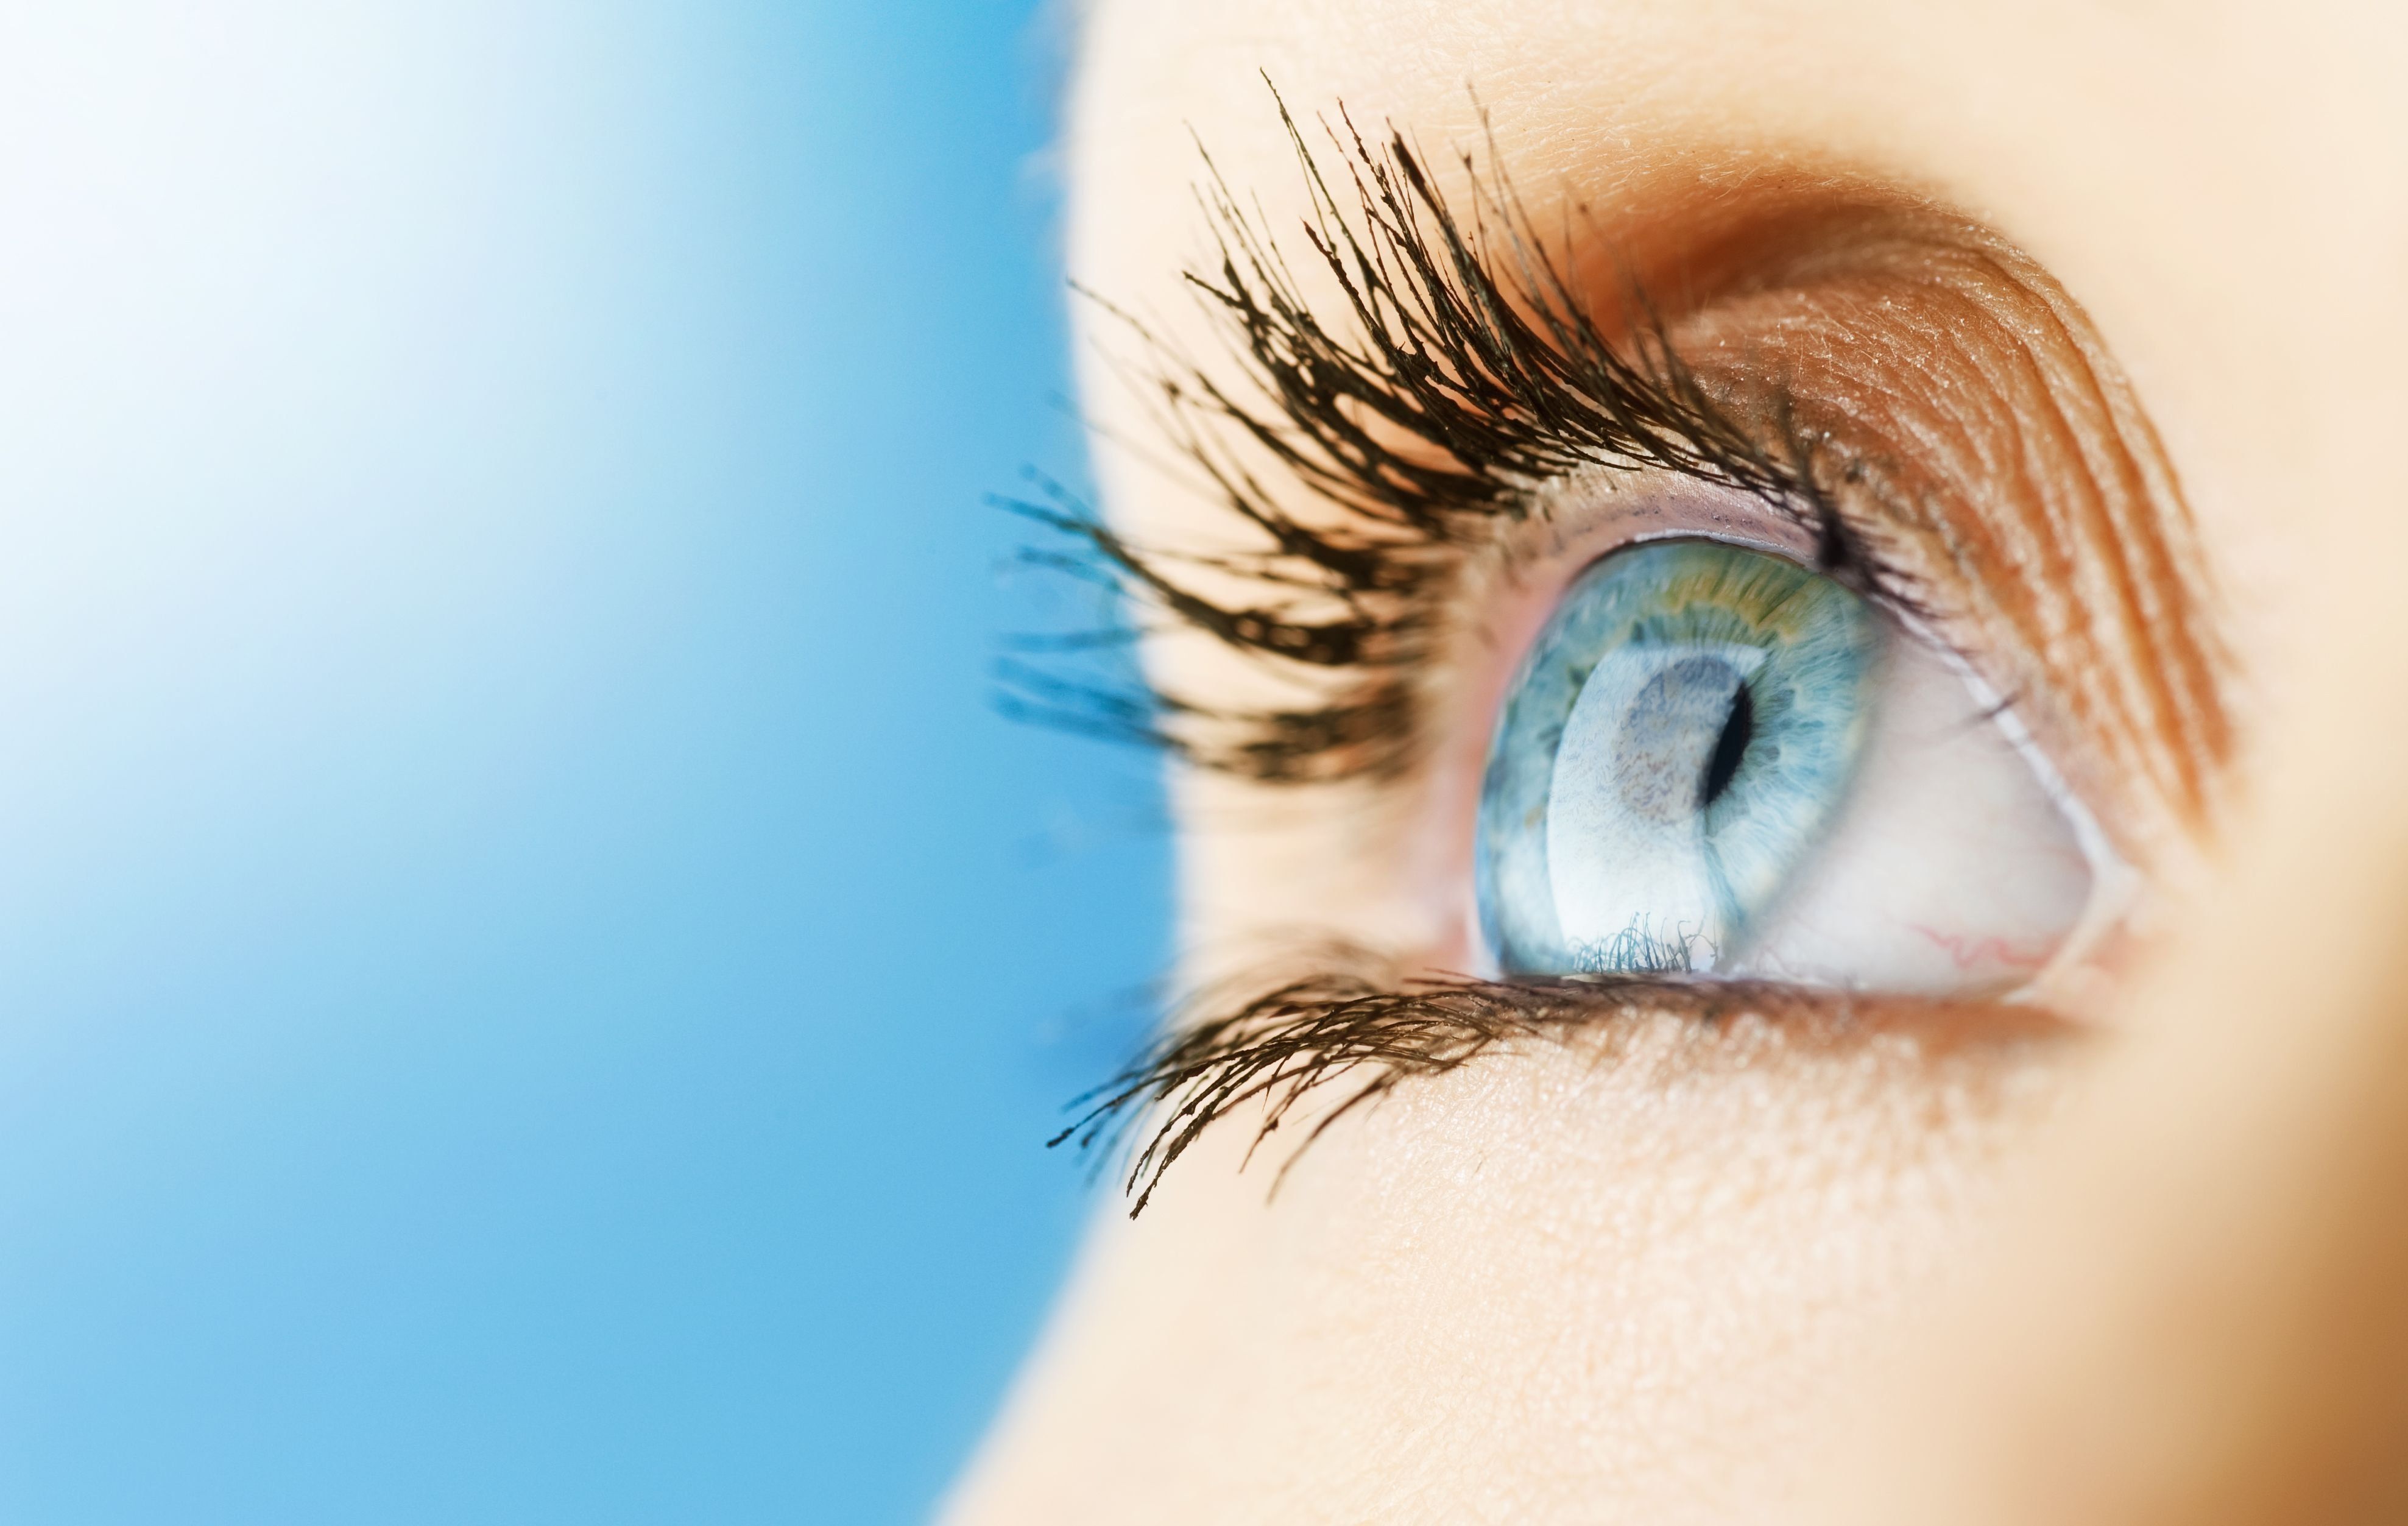 דירוג מרפאות העיניים הטובות ביותר ביקטרינבורג בשנת 2020